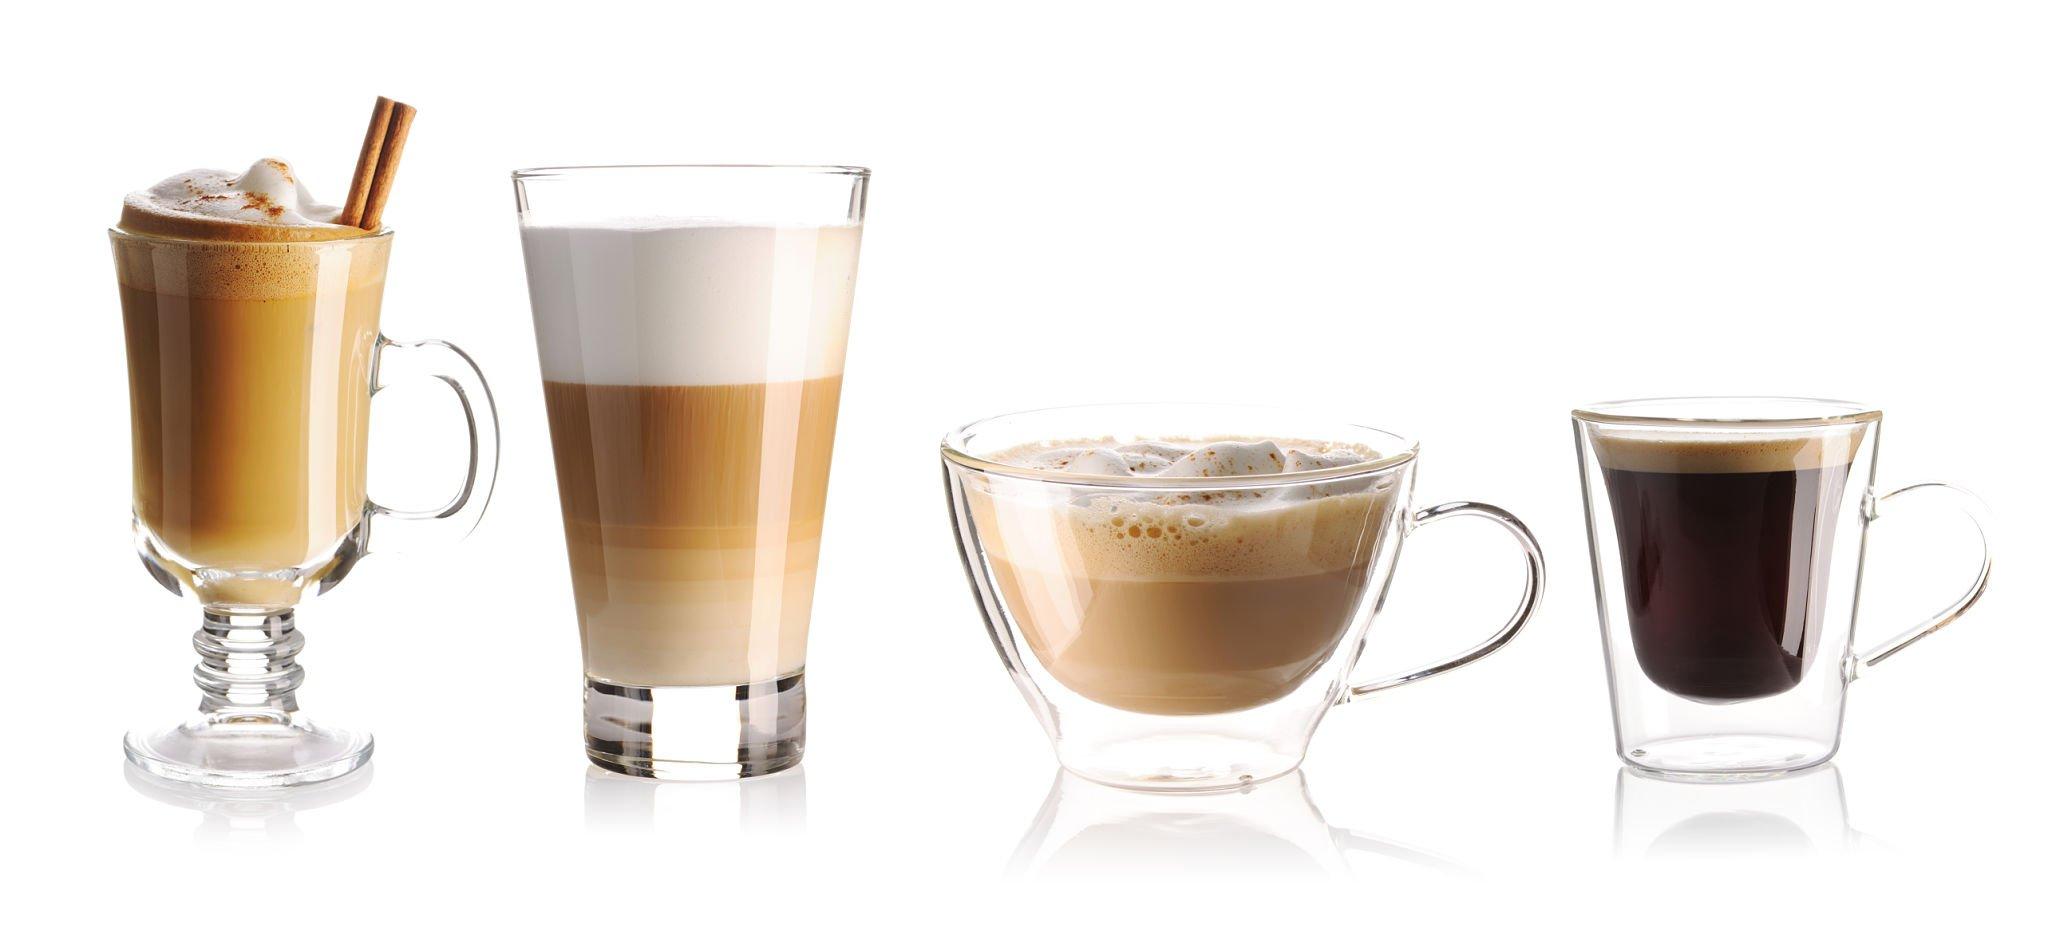 Compare Cappuccino vs Latte: Which Has More Caffeine?